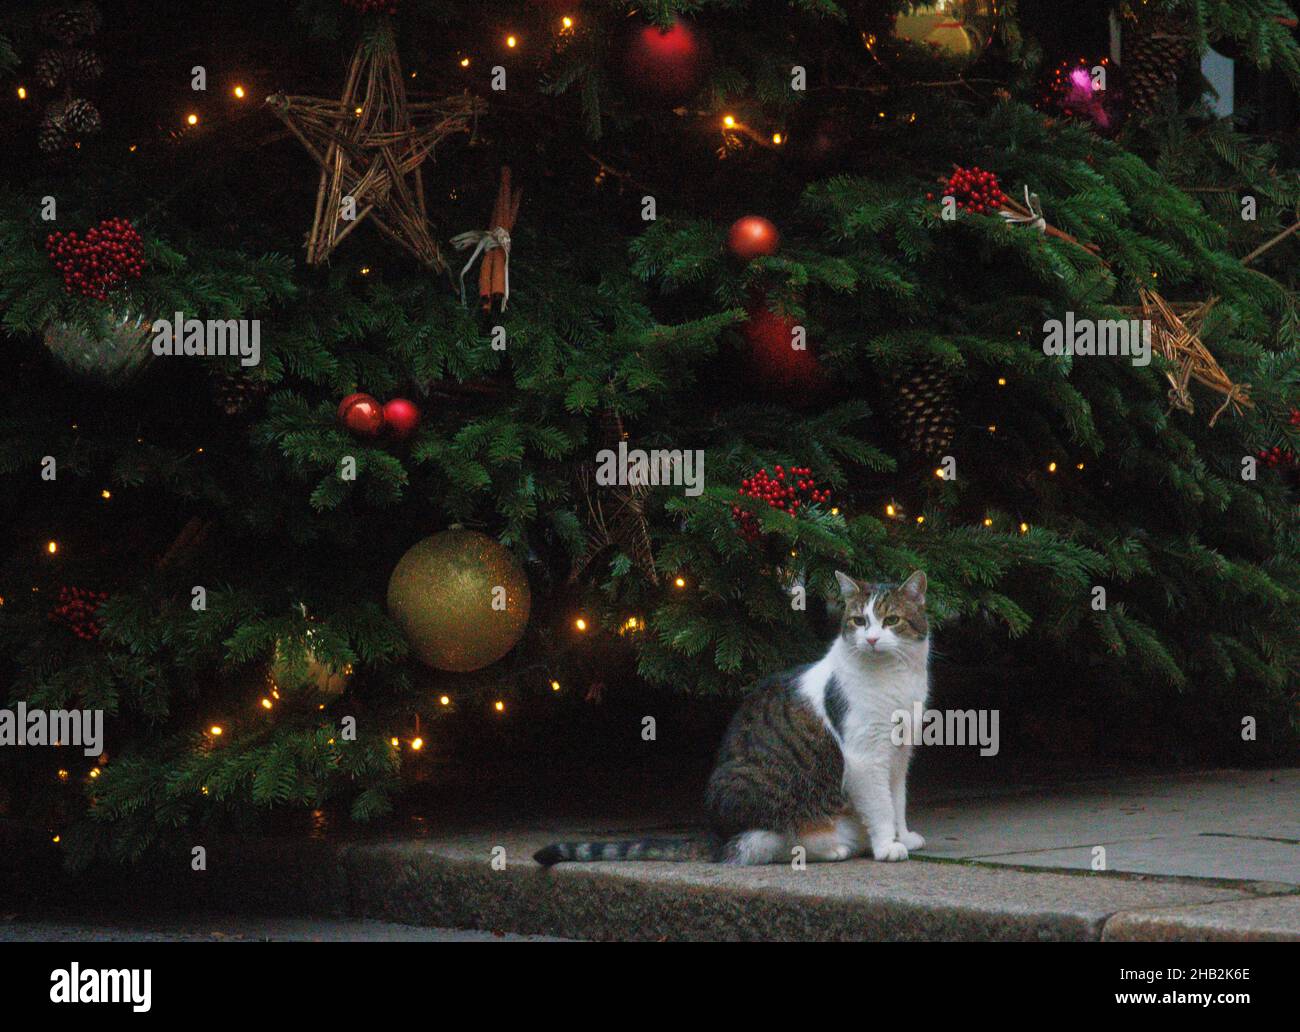 Londres, Royaume-Uni.16th décembre 2021.Larry le chat Downing Street se trouve sous l'arbre de Noël.Credit: Tommy London/Alay Live News Banque D'Images